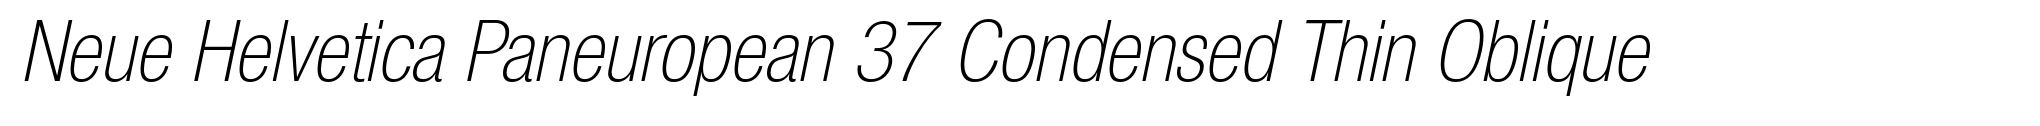 Neue Helvetica Paneuropean 37 Condensed Thin Oblique image